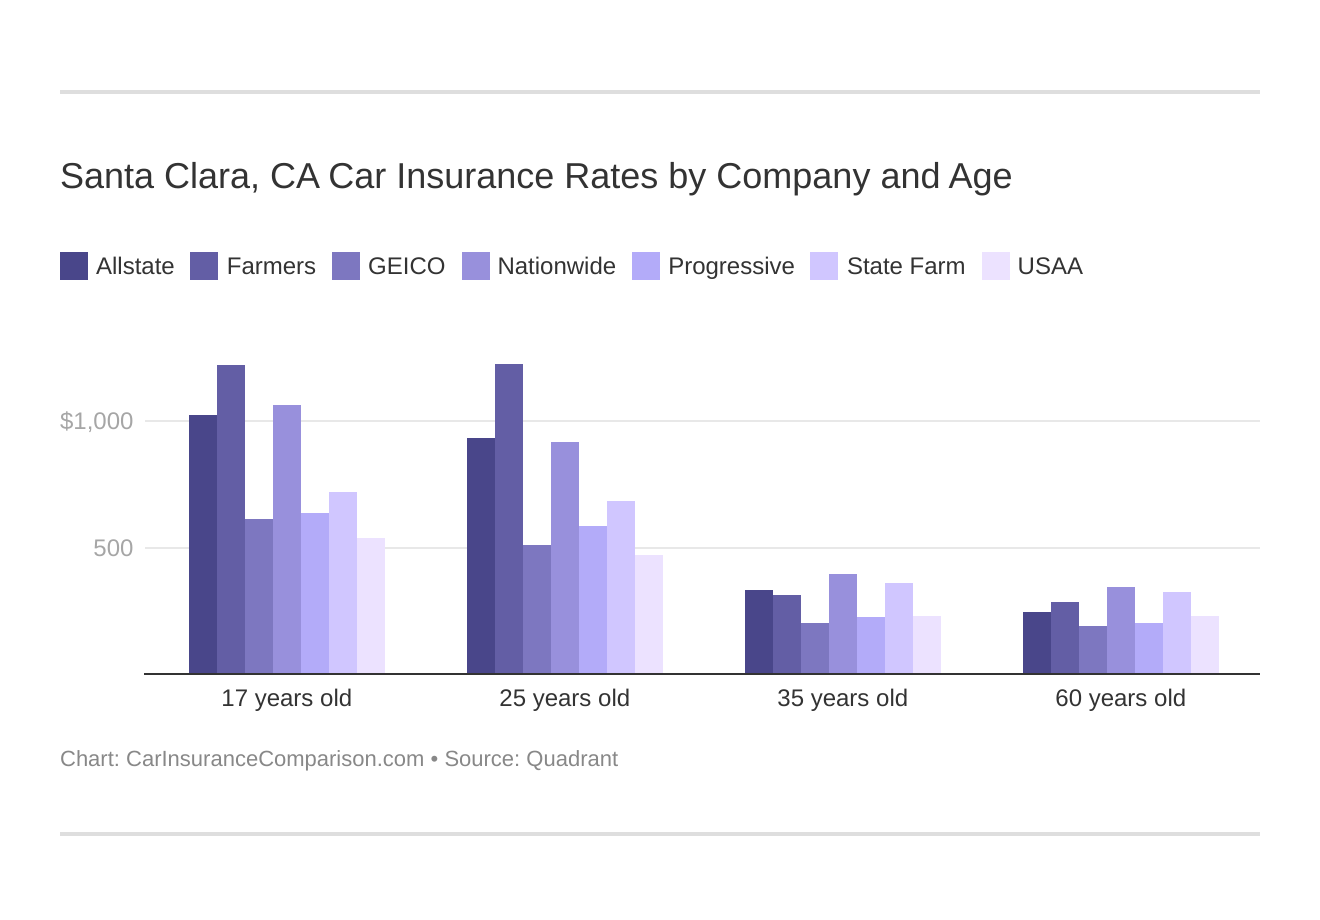 Santa Clara, CA Car Insurance Rates by Company and Age